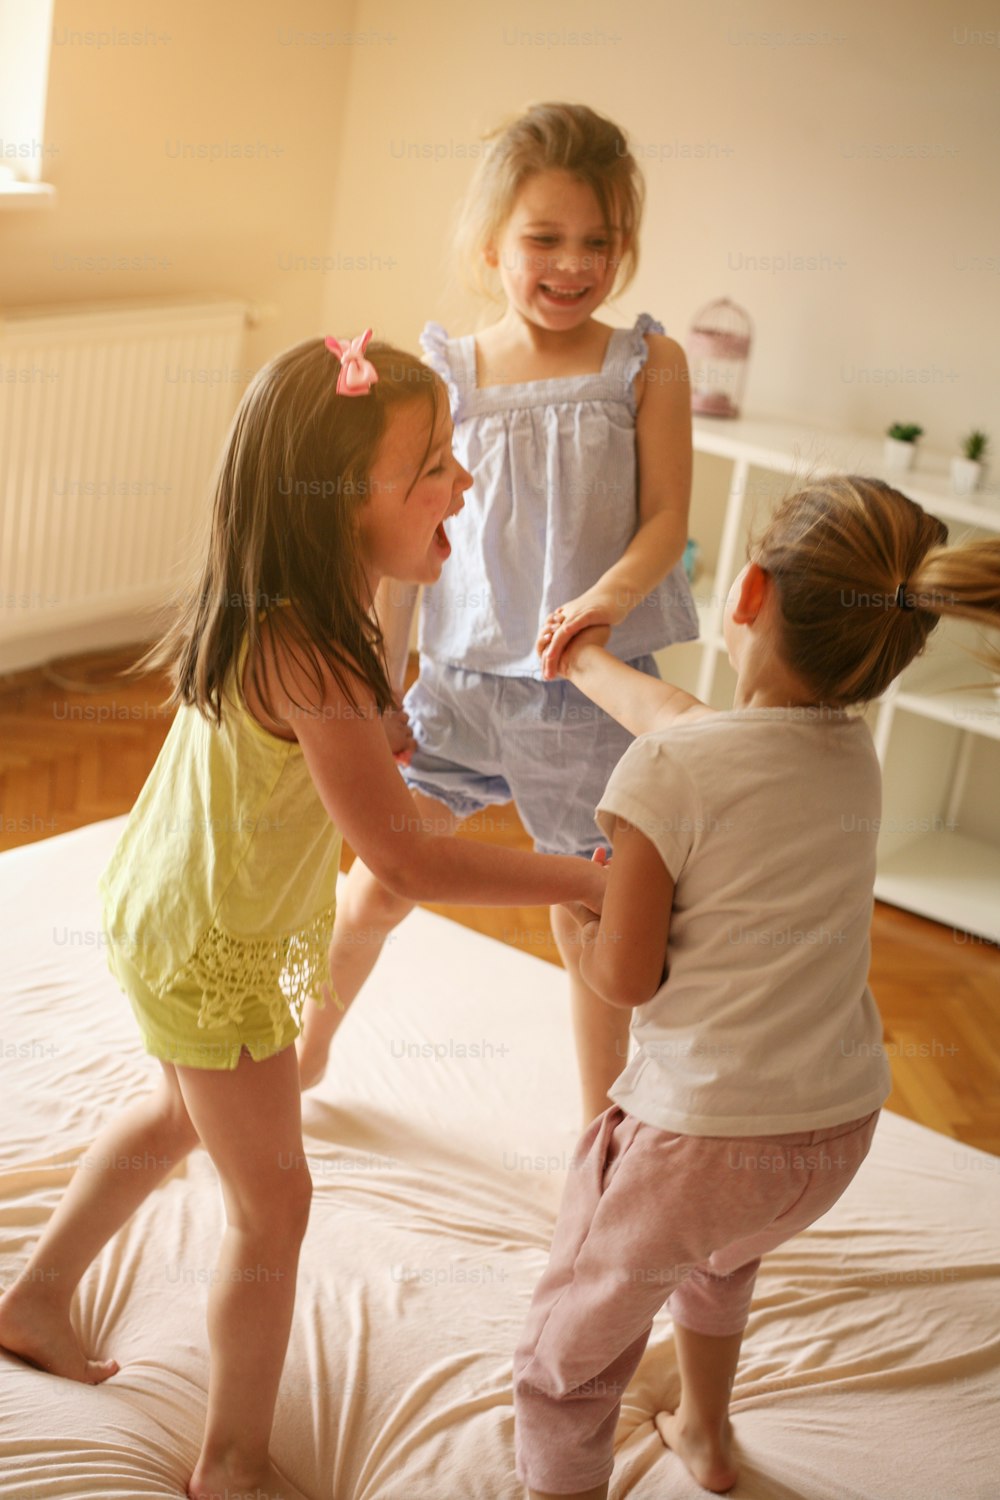 어린 소녀들이 침대에서 함께 즐거운 시간을 보내고 있습니다. 어린 소녀들은 침대에서 집에서 놀고 있습니다.